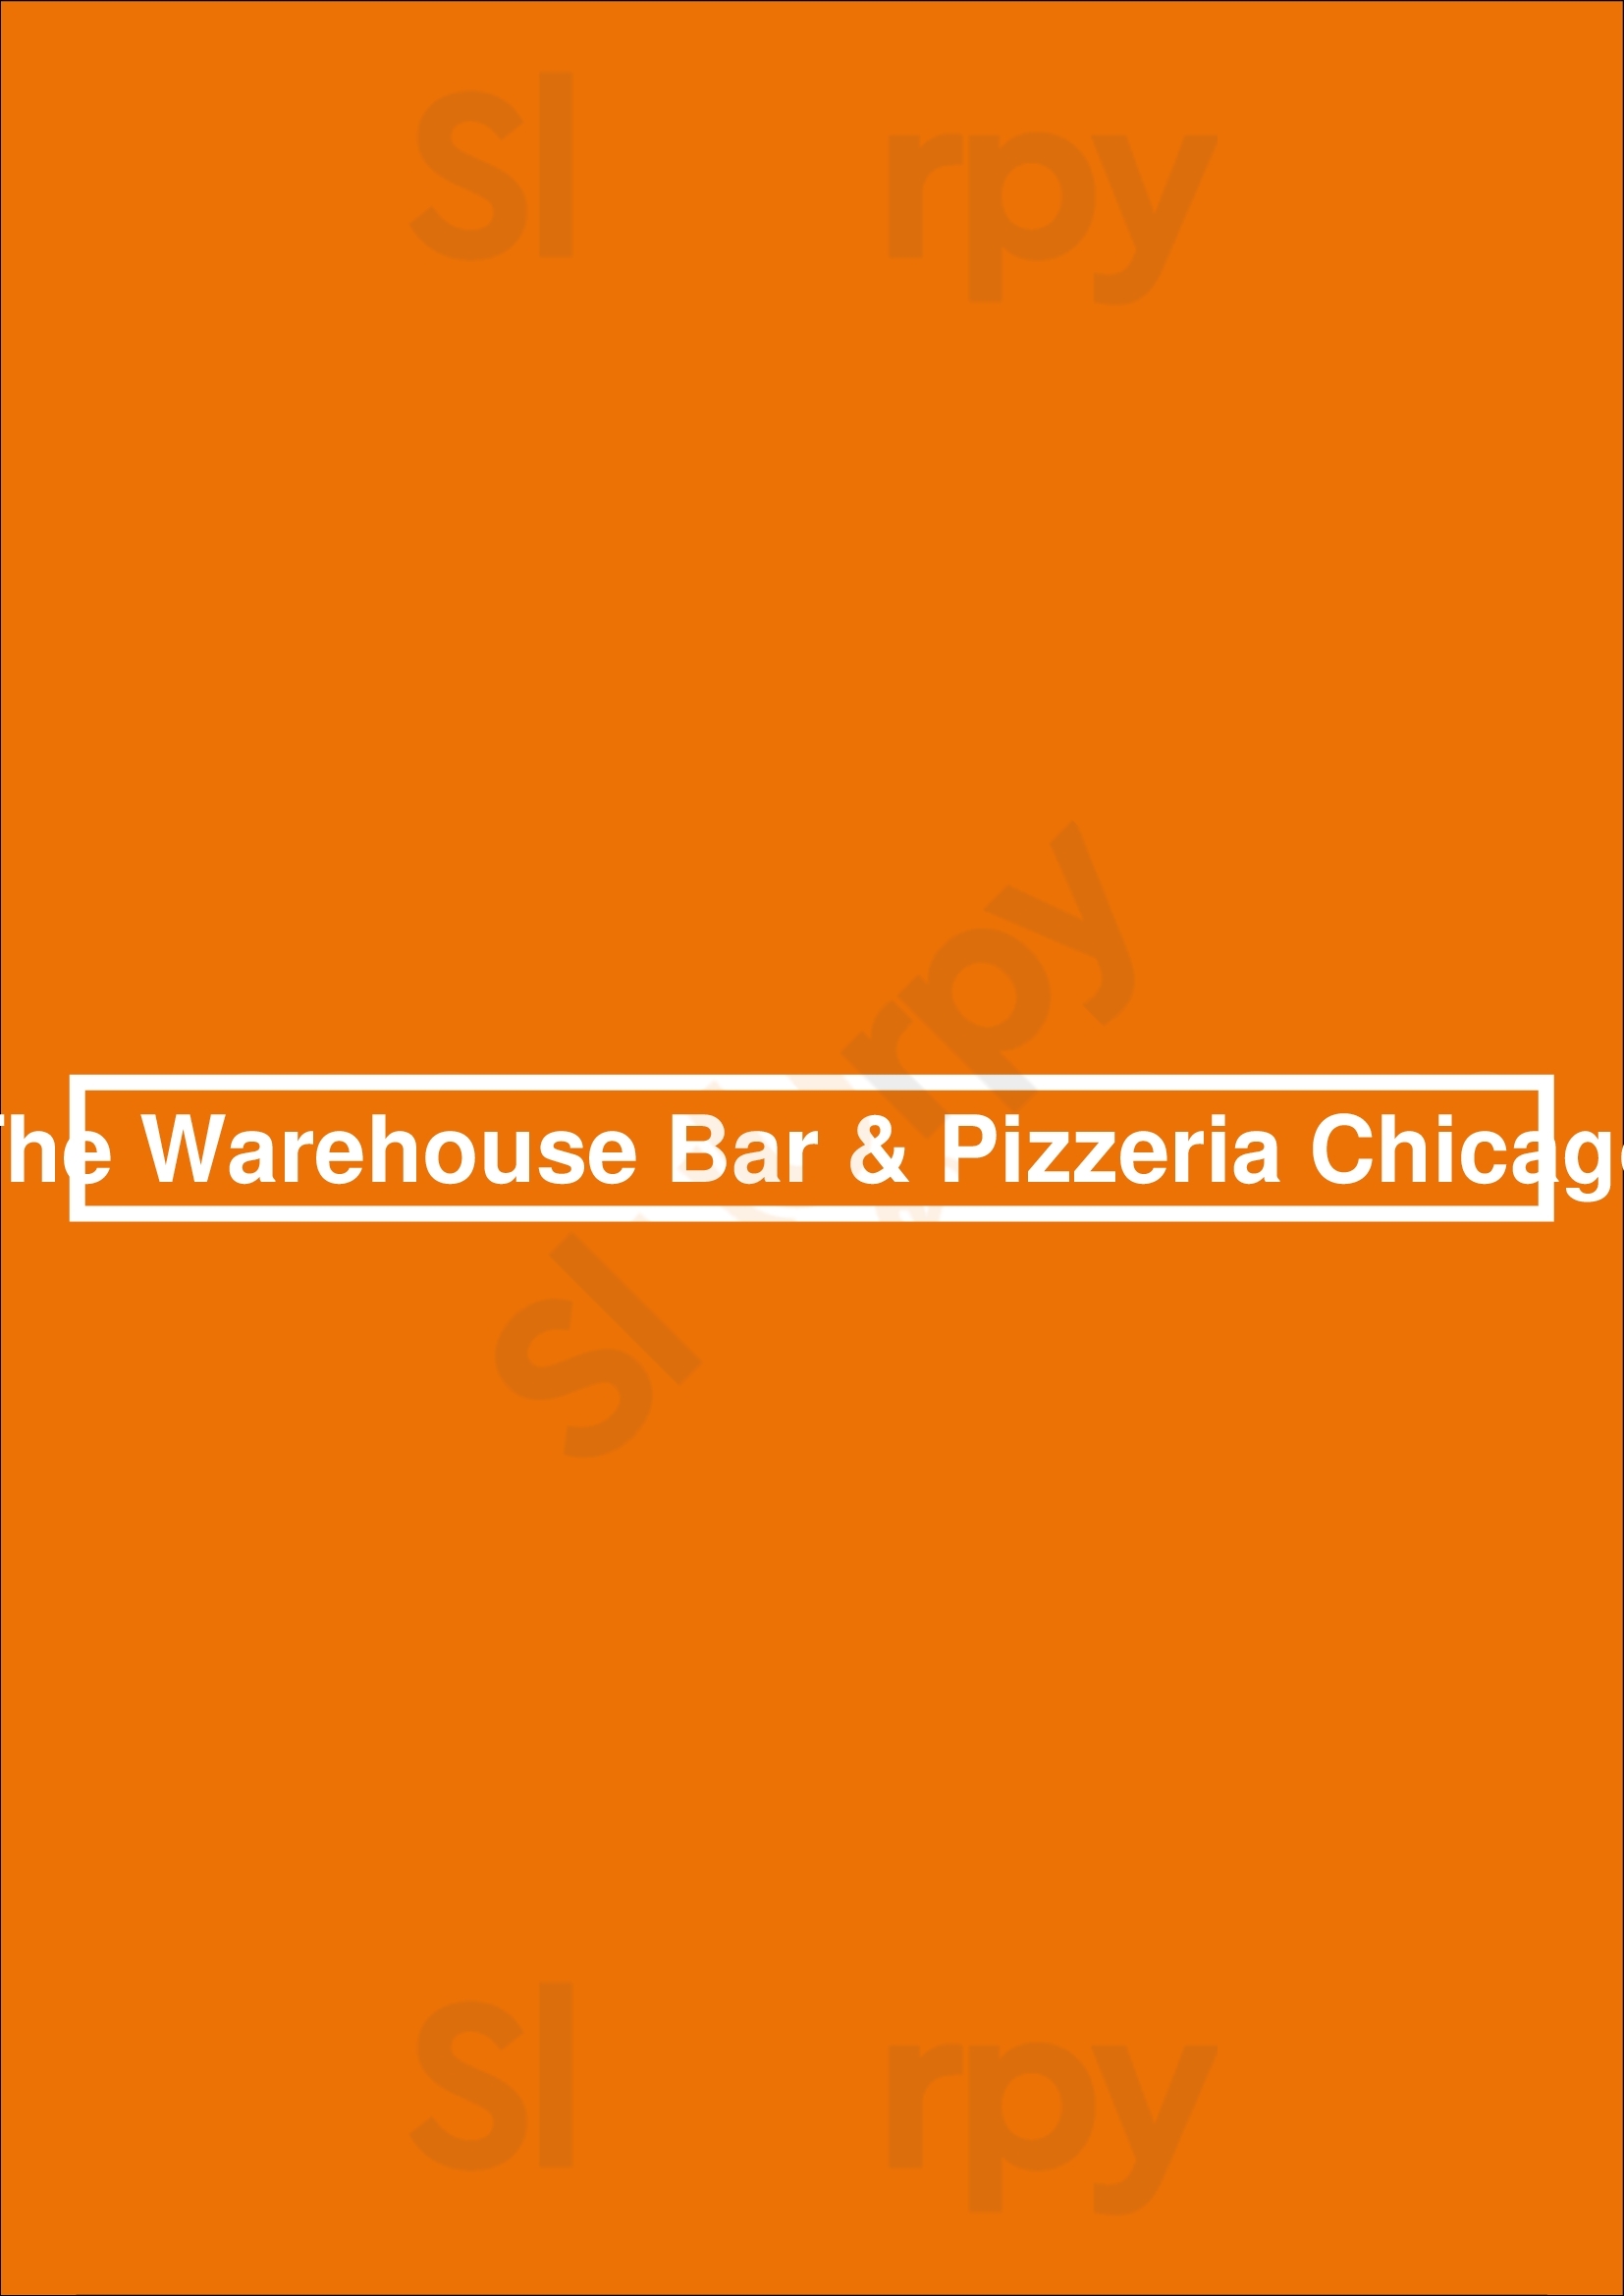 The Warehouse Bar & Pizzeria Chicago Chicago Menu - 1